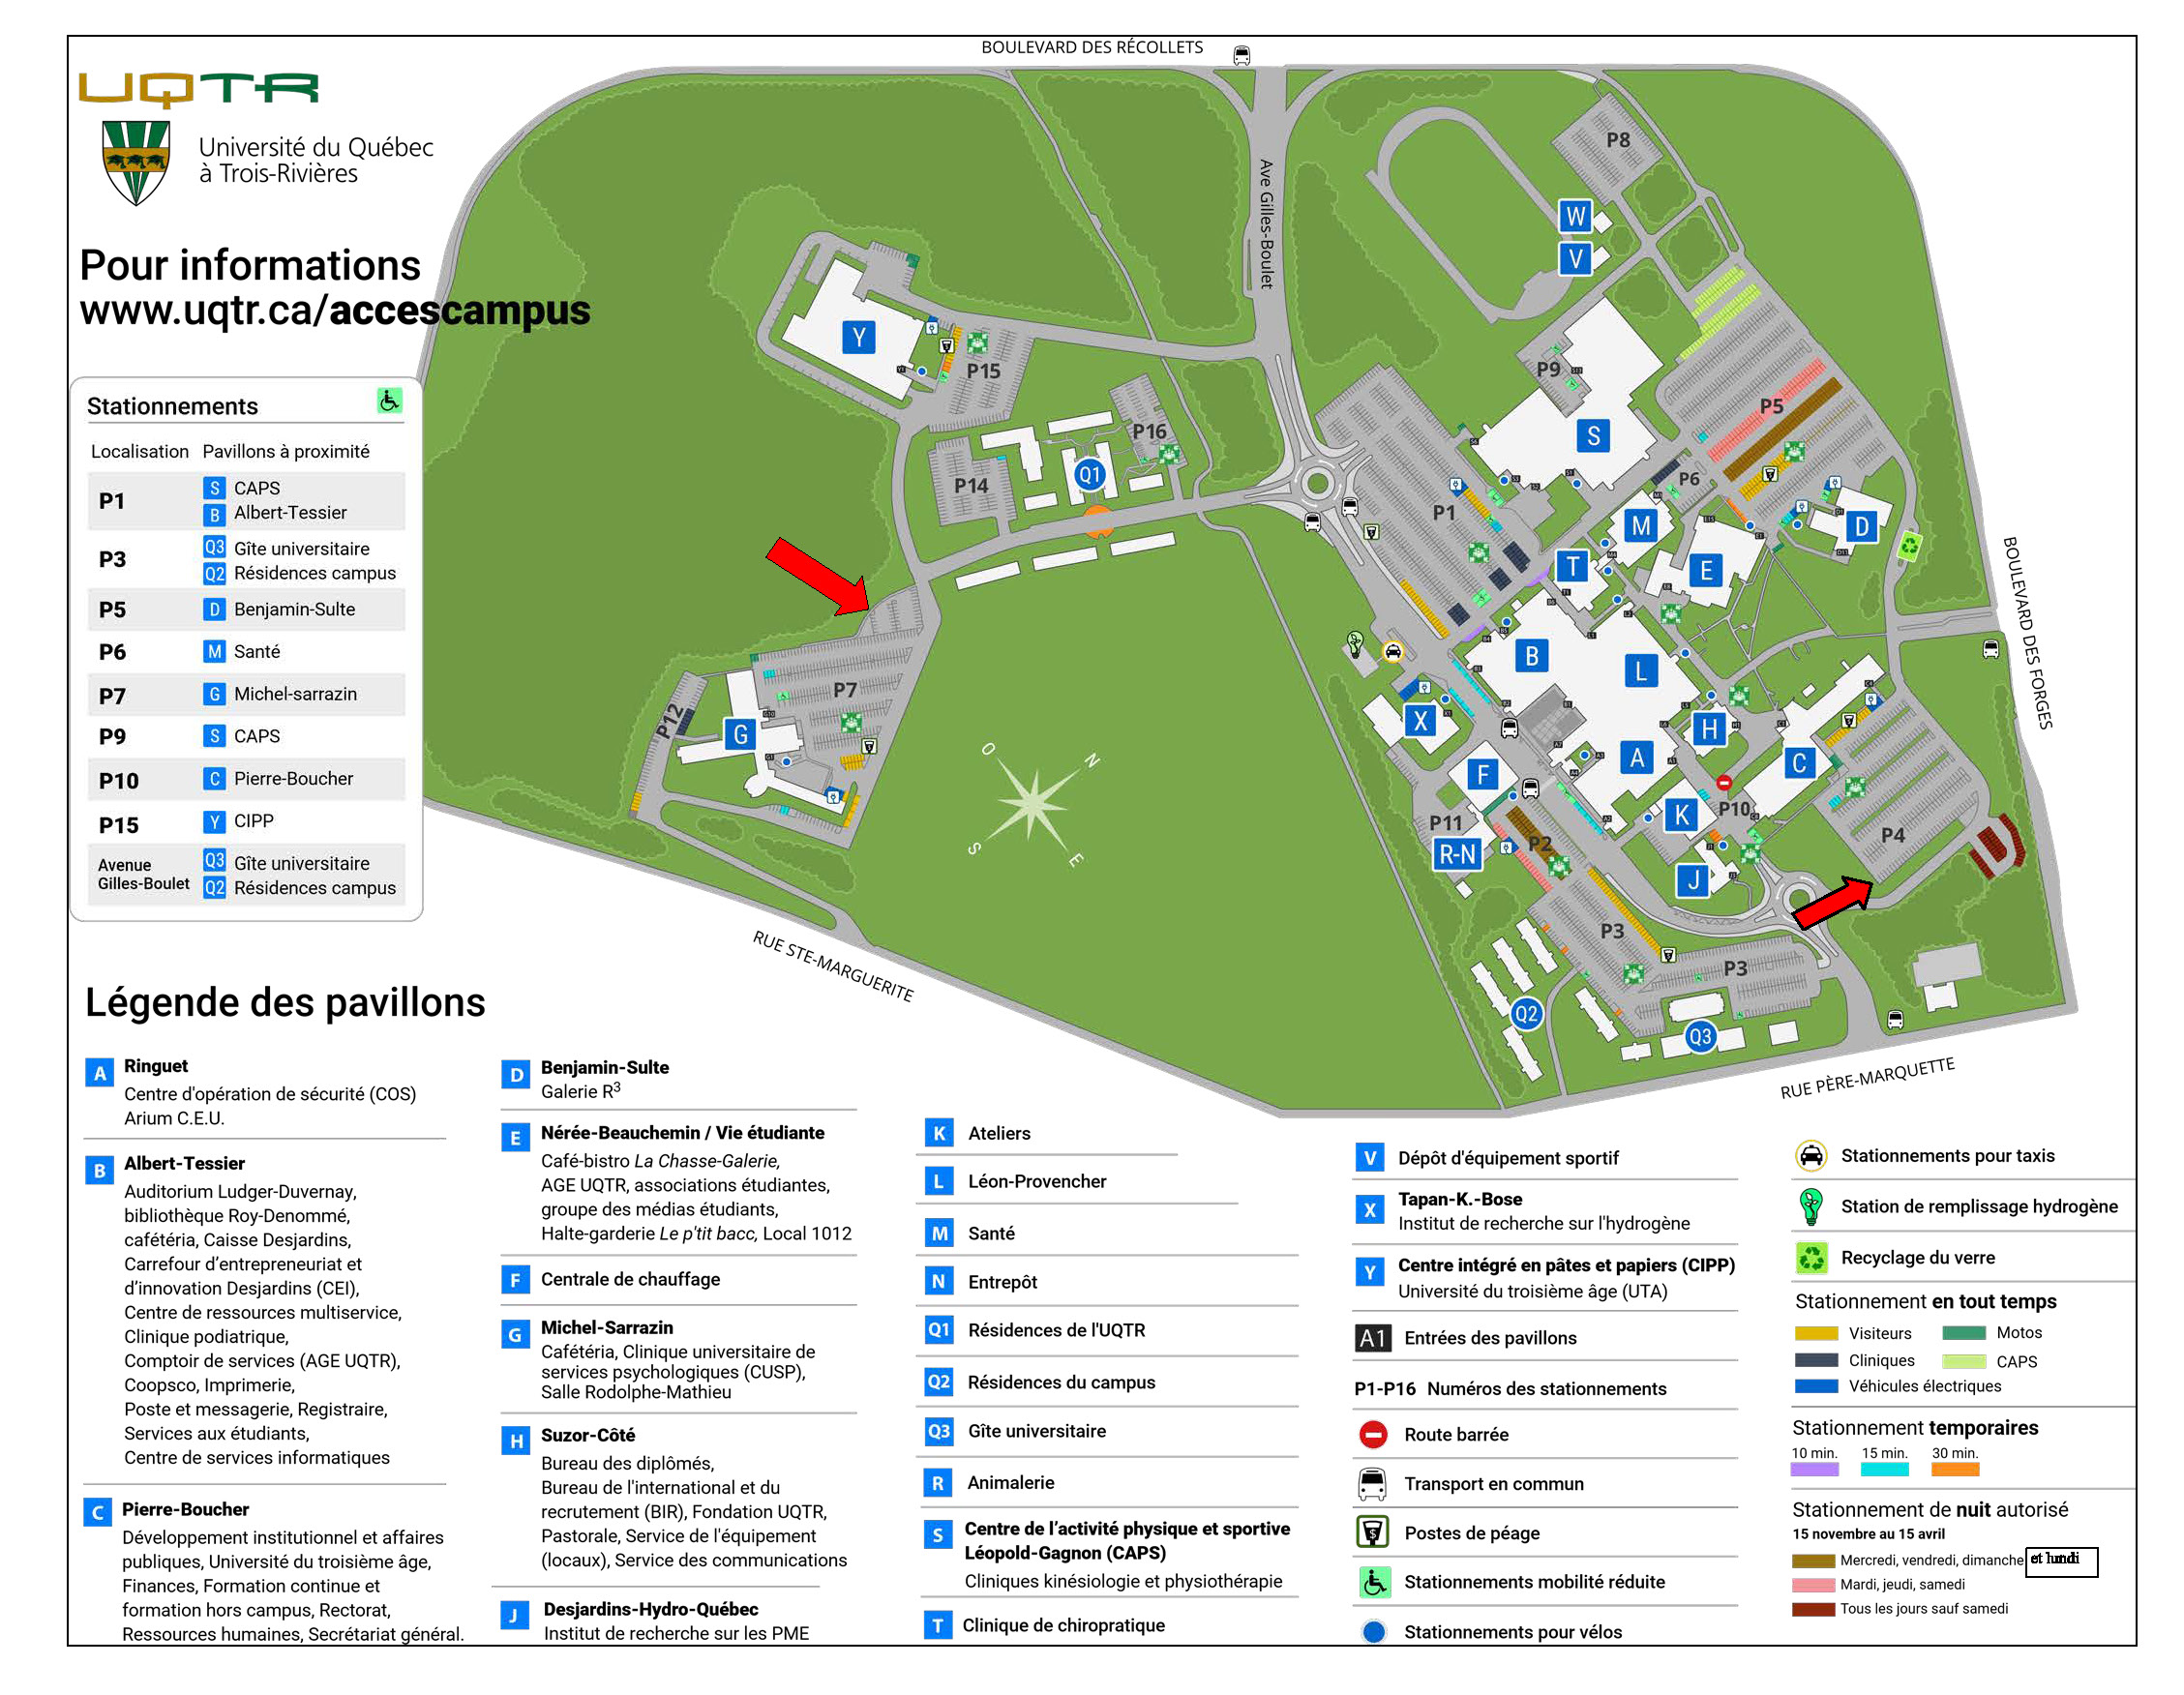 Plan du campus indiquant où se situent les stationnements 4 et 15.